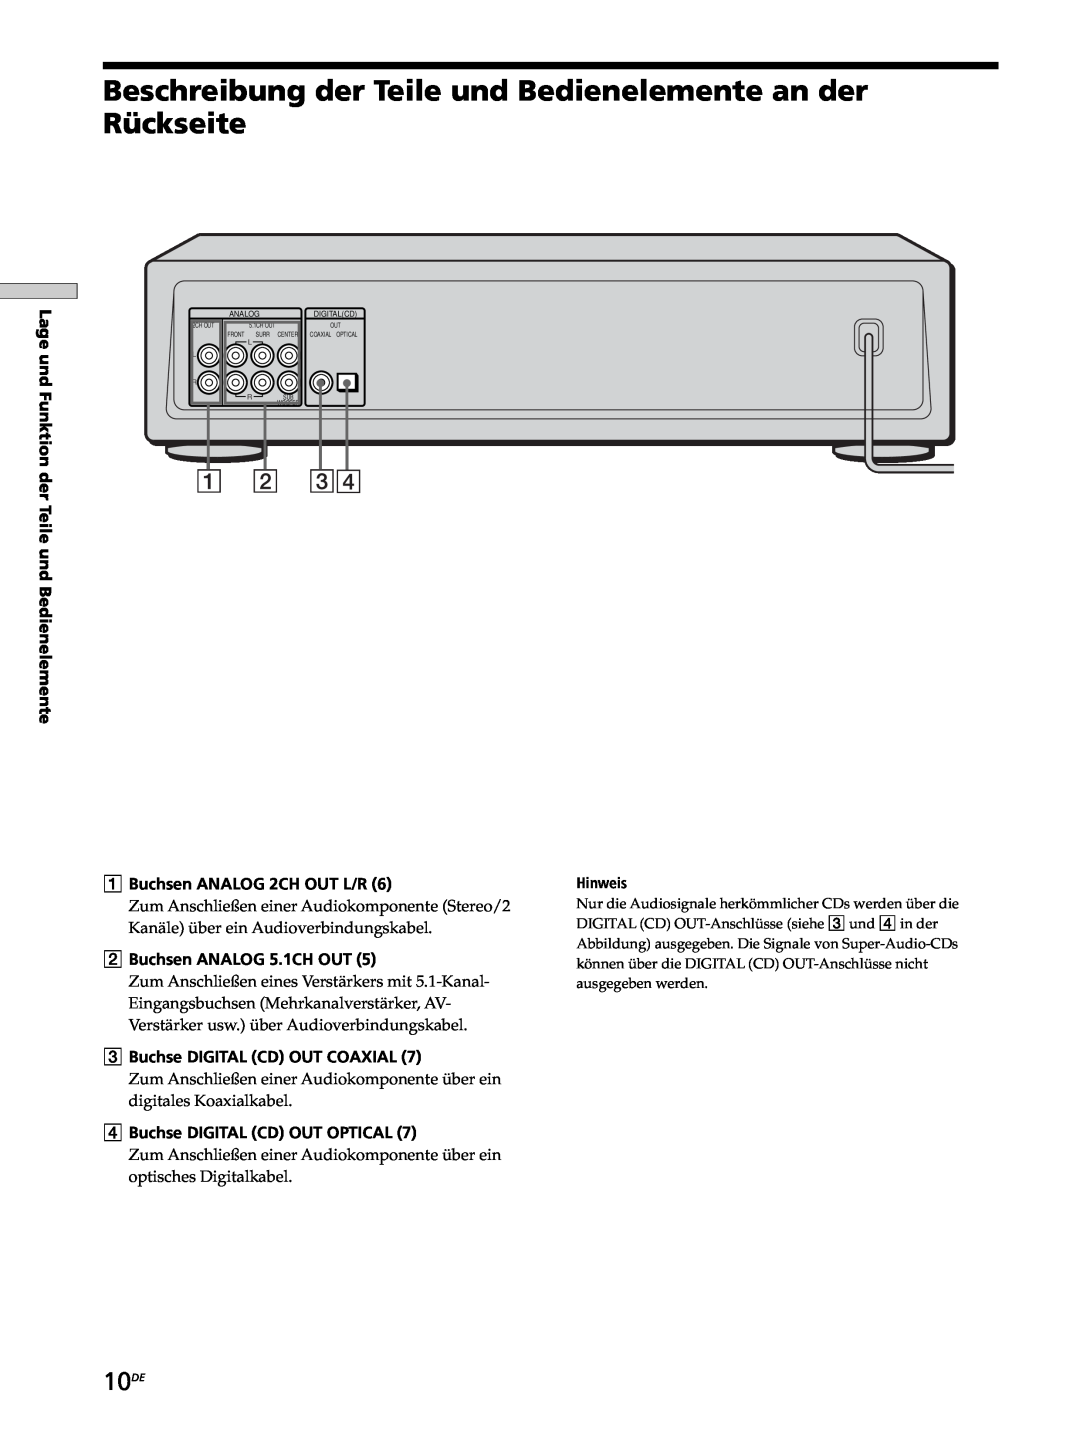 Sony SCD-XB770 operating instructions 10DE, Lage und Funktion der Teile und Bedienelemente, 1Buchsen ANALOG 2CH OUT L/R 